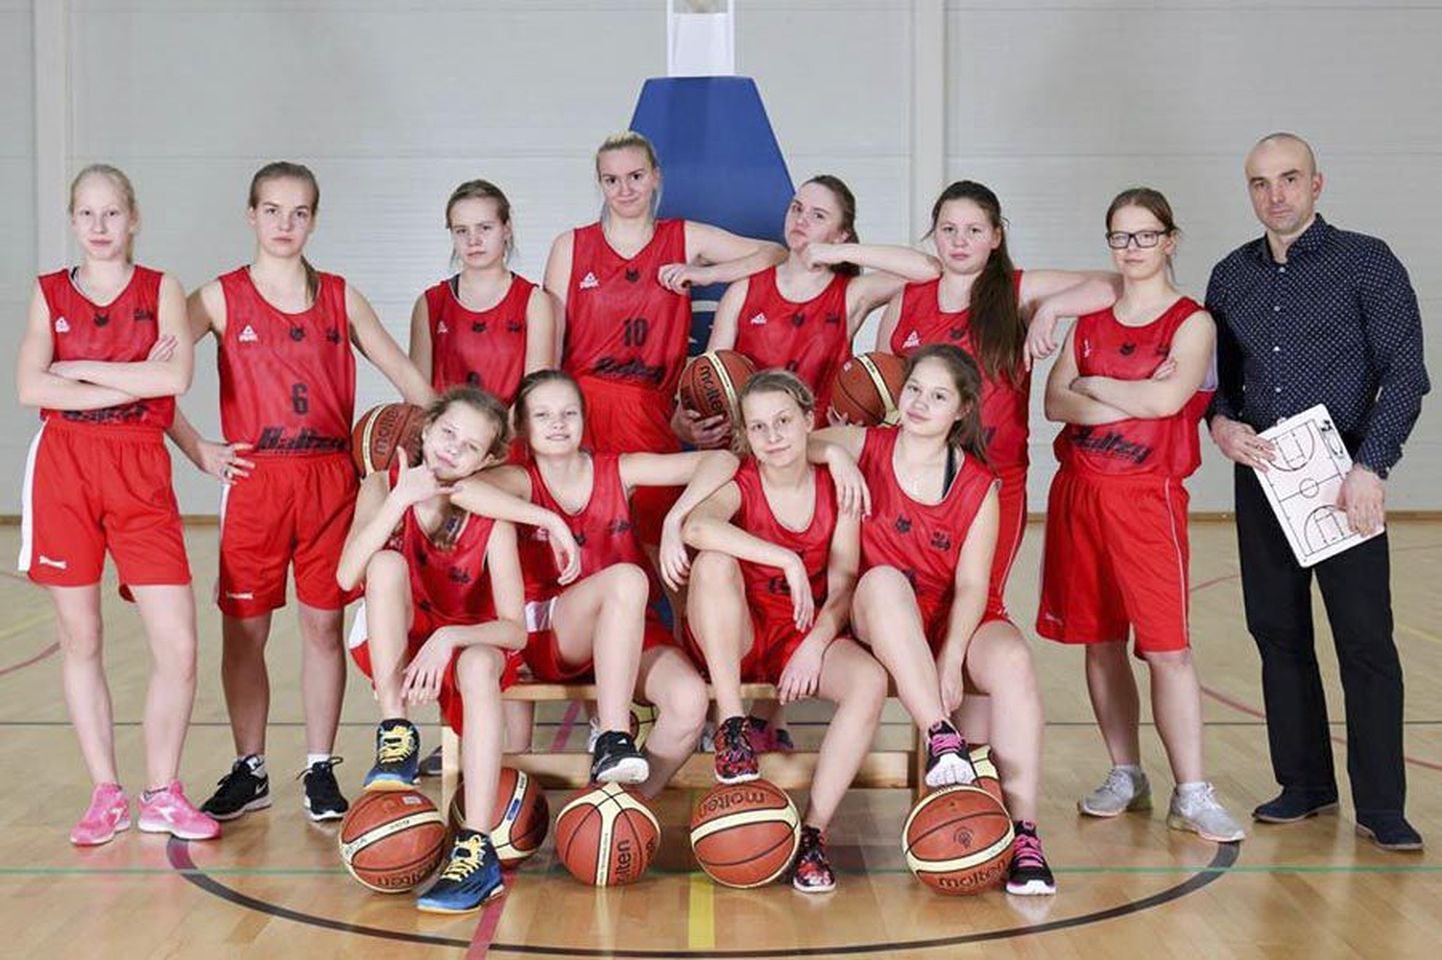 Tänavustel Eesti naiste korvpallimeistrivõistlustel teeb kaasa ka üks Viljandimaa naiskond, Abja S&S, kelle peaeesmärk oma esimestel tiitlivõistlustel on korjata kogemusi ja mängupraktikat.